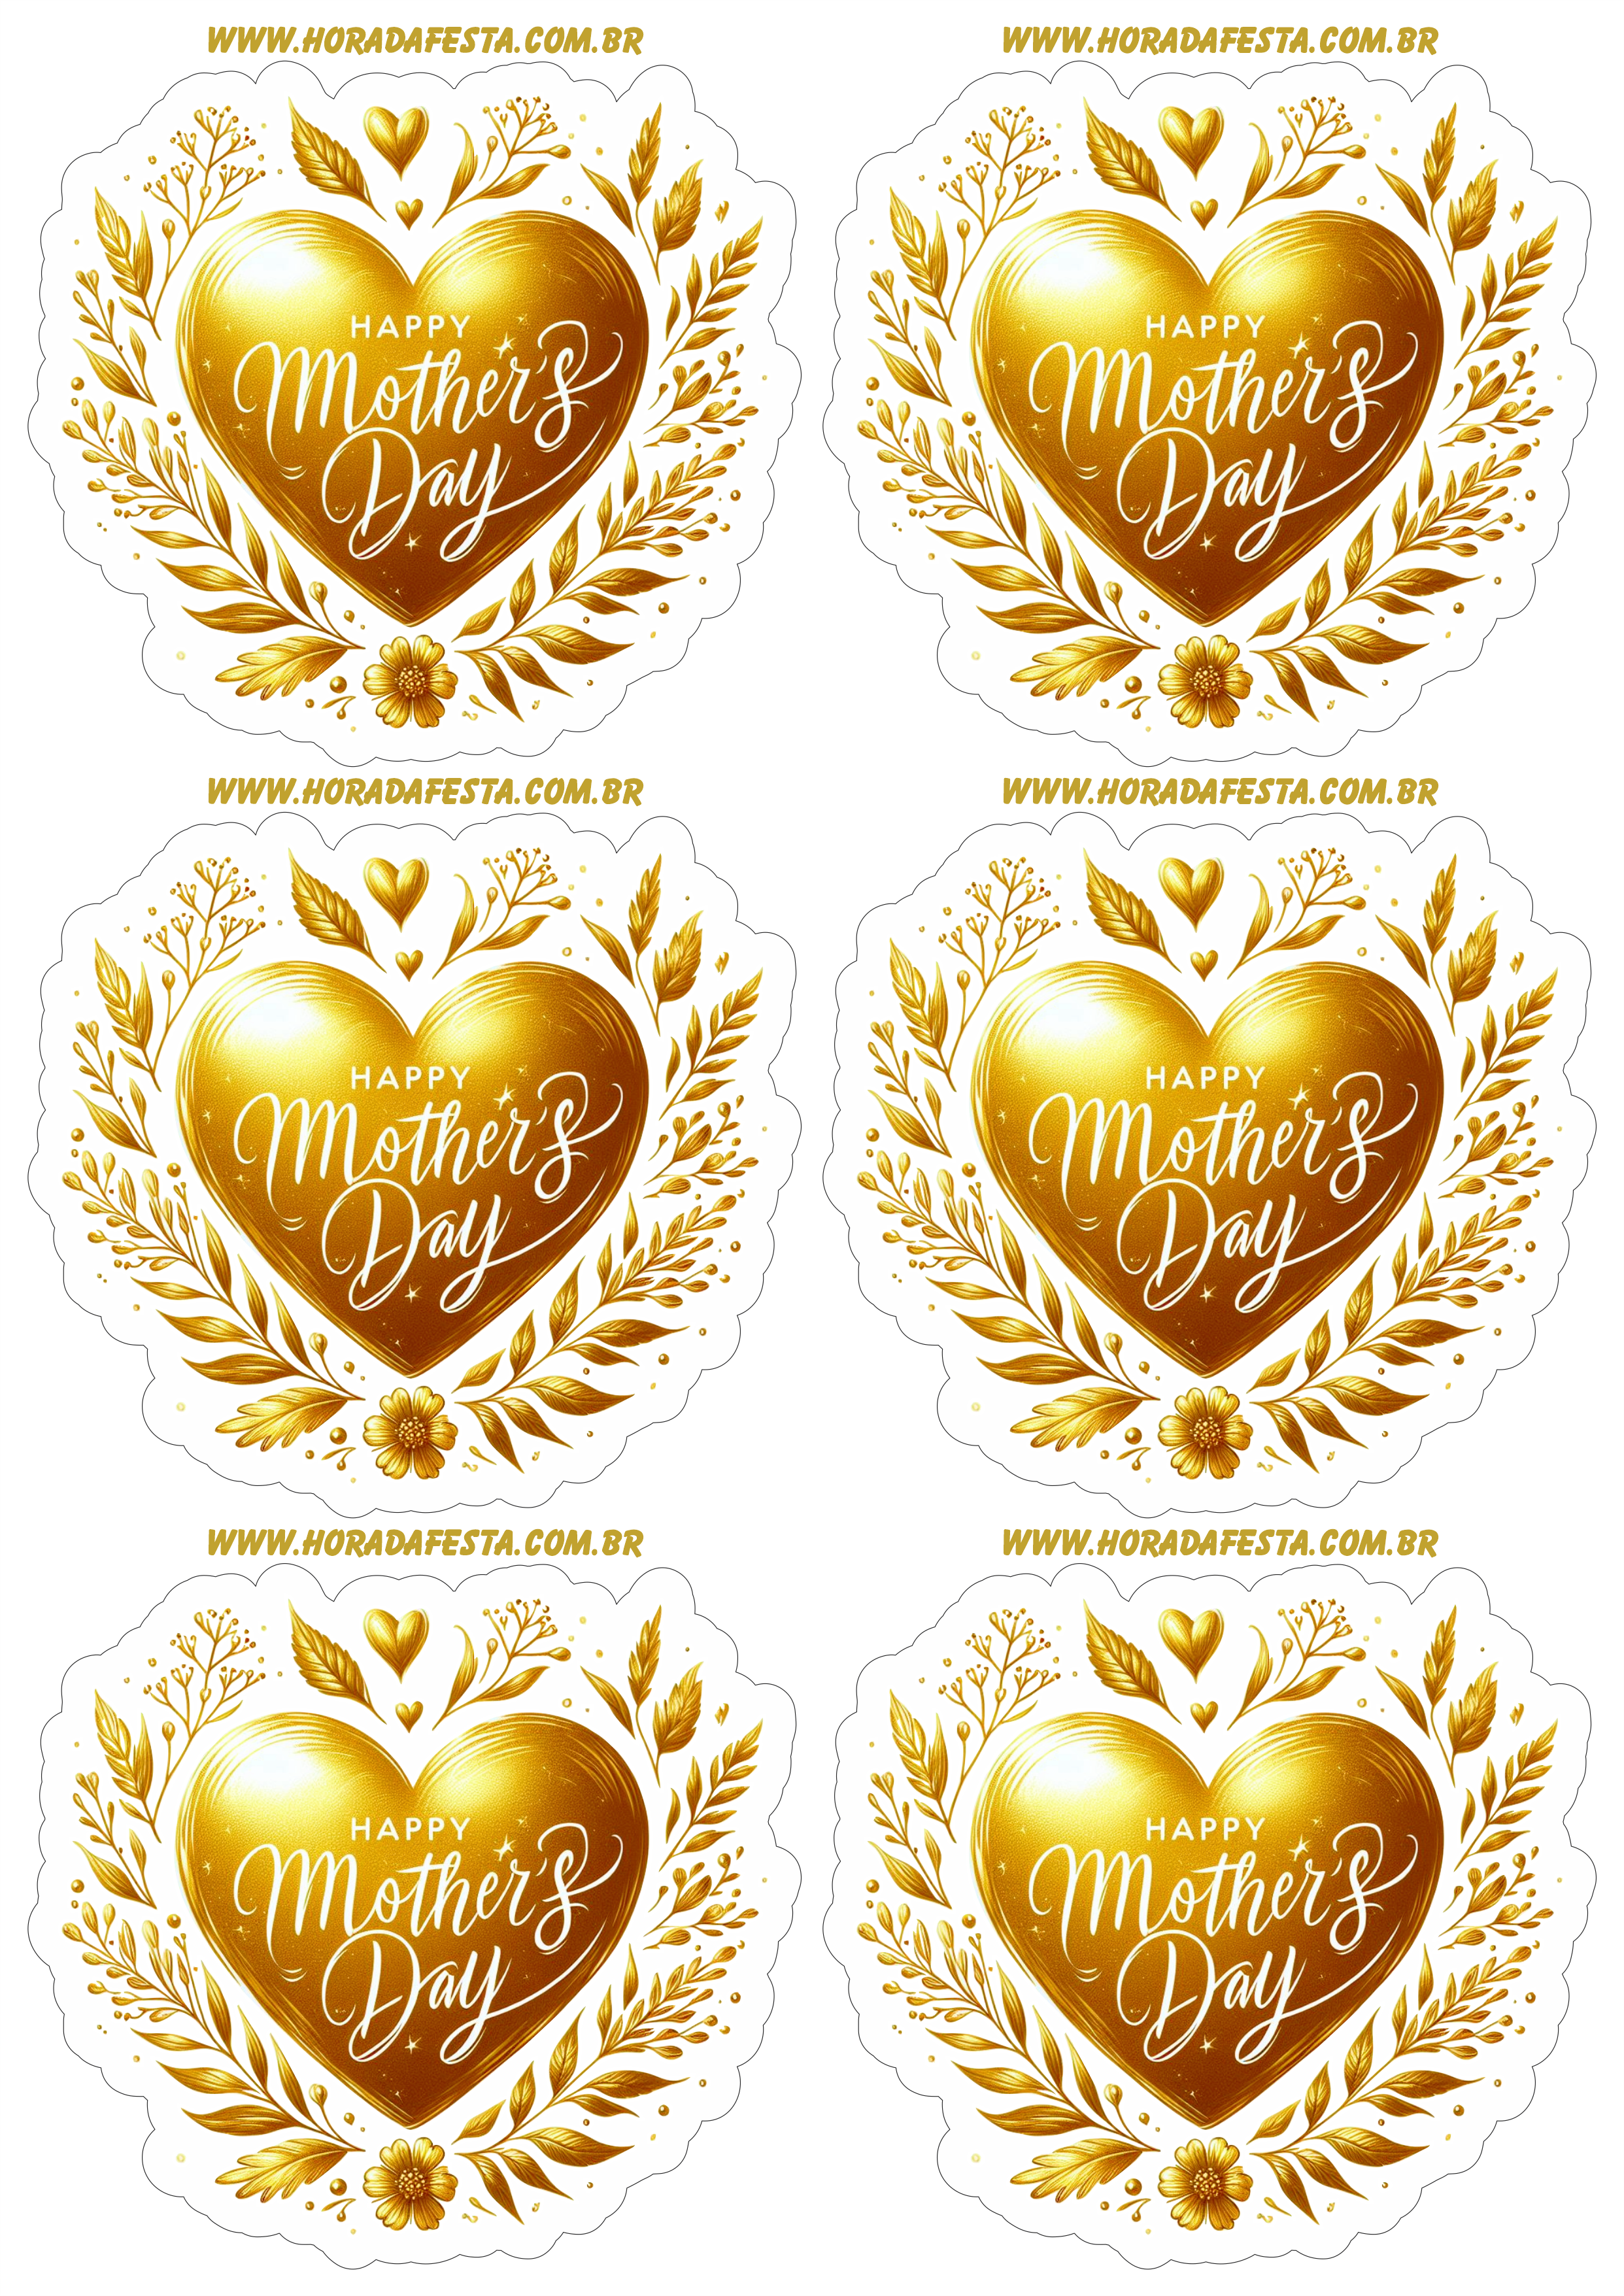 Dia das mães adesivo de coração dourado para decoração happy mother’s day artes gráficas 6 imagens png